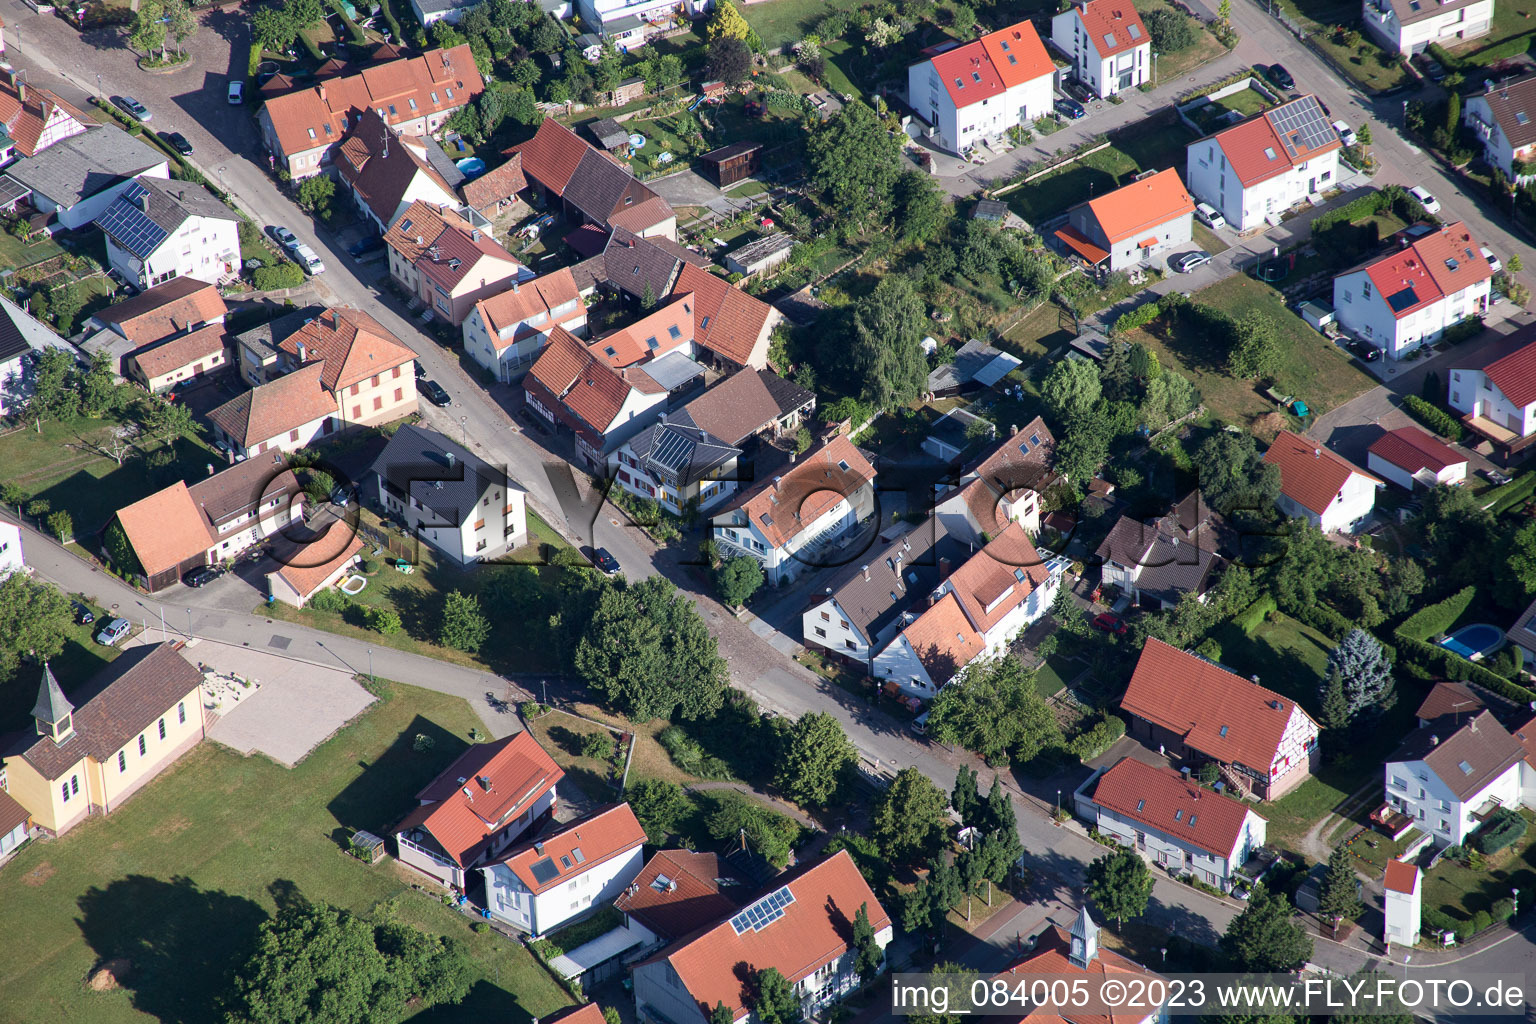 Ortsteil Schöllbronn in Ettlingen im Bundesland Baden-Württemberg, Deutschland von oben gesehen